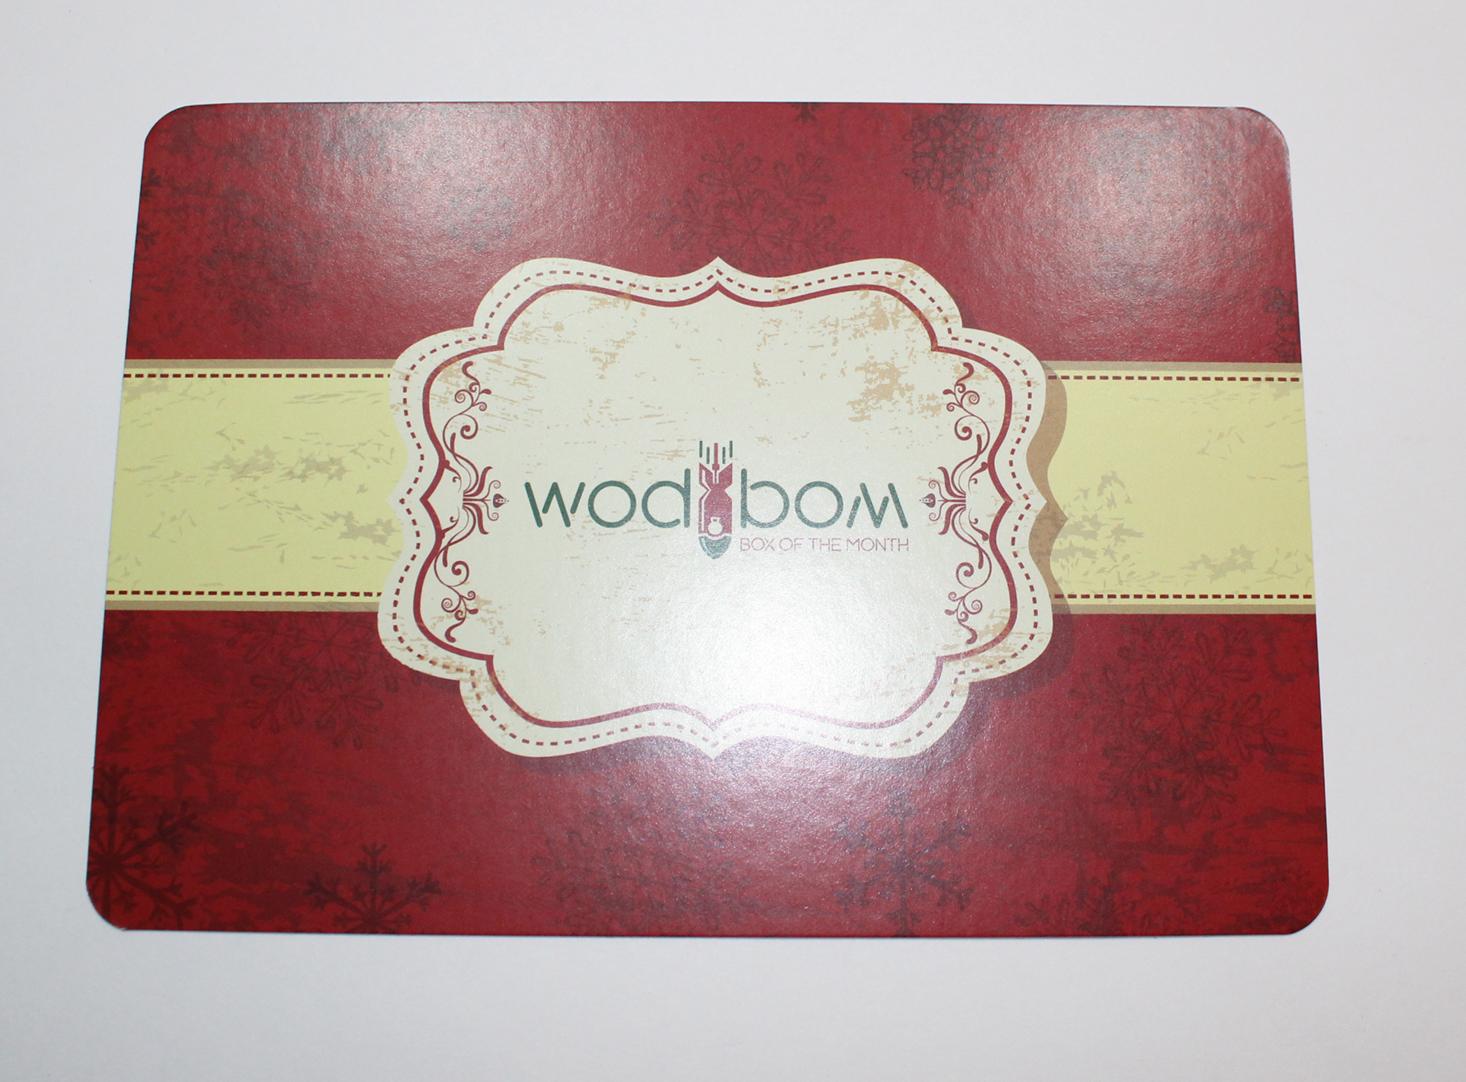 wodbom-december-2016-booklet-front